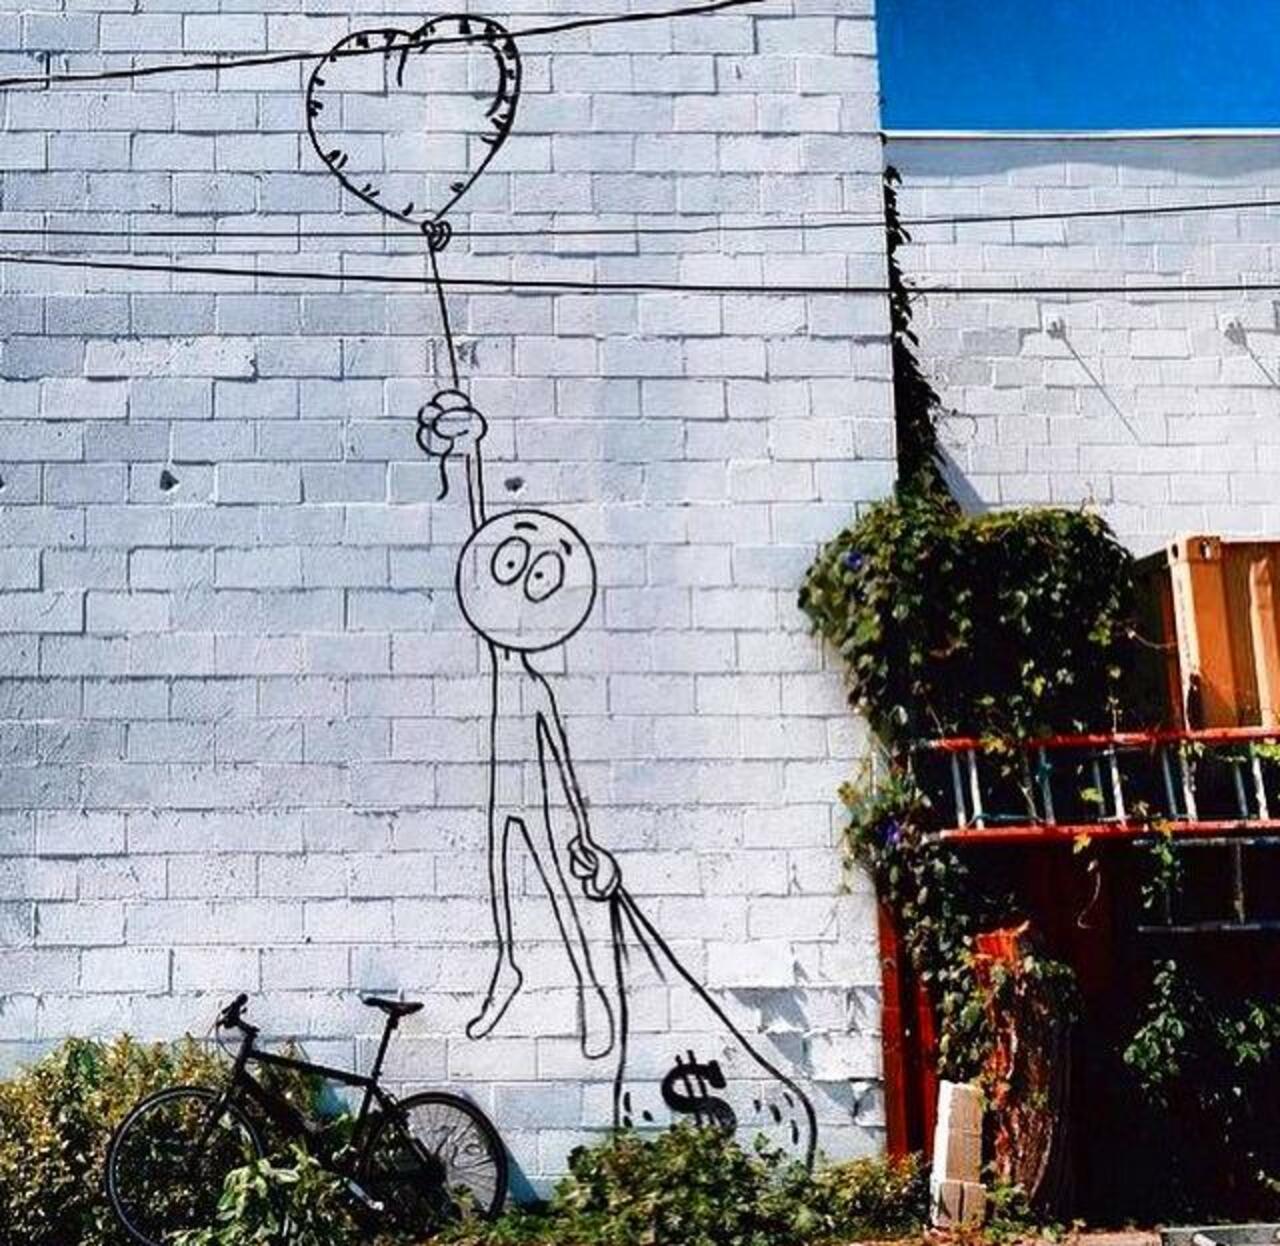 Love or money?
Street Art by Kaia Spire in LA 

#art #arte #graffiti #streetart http://t.co/LB8BsYJMY7